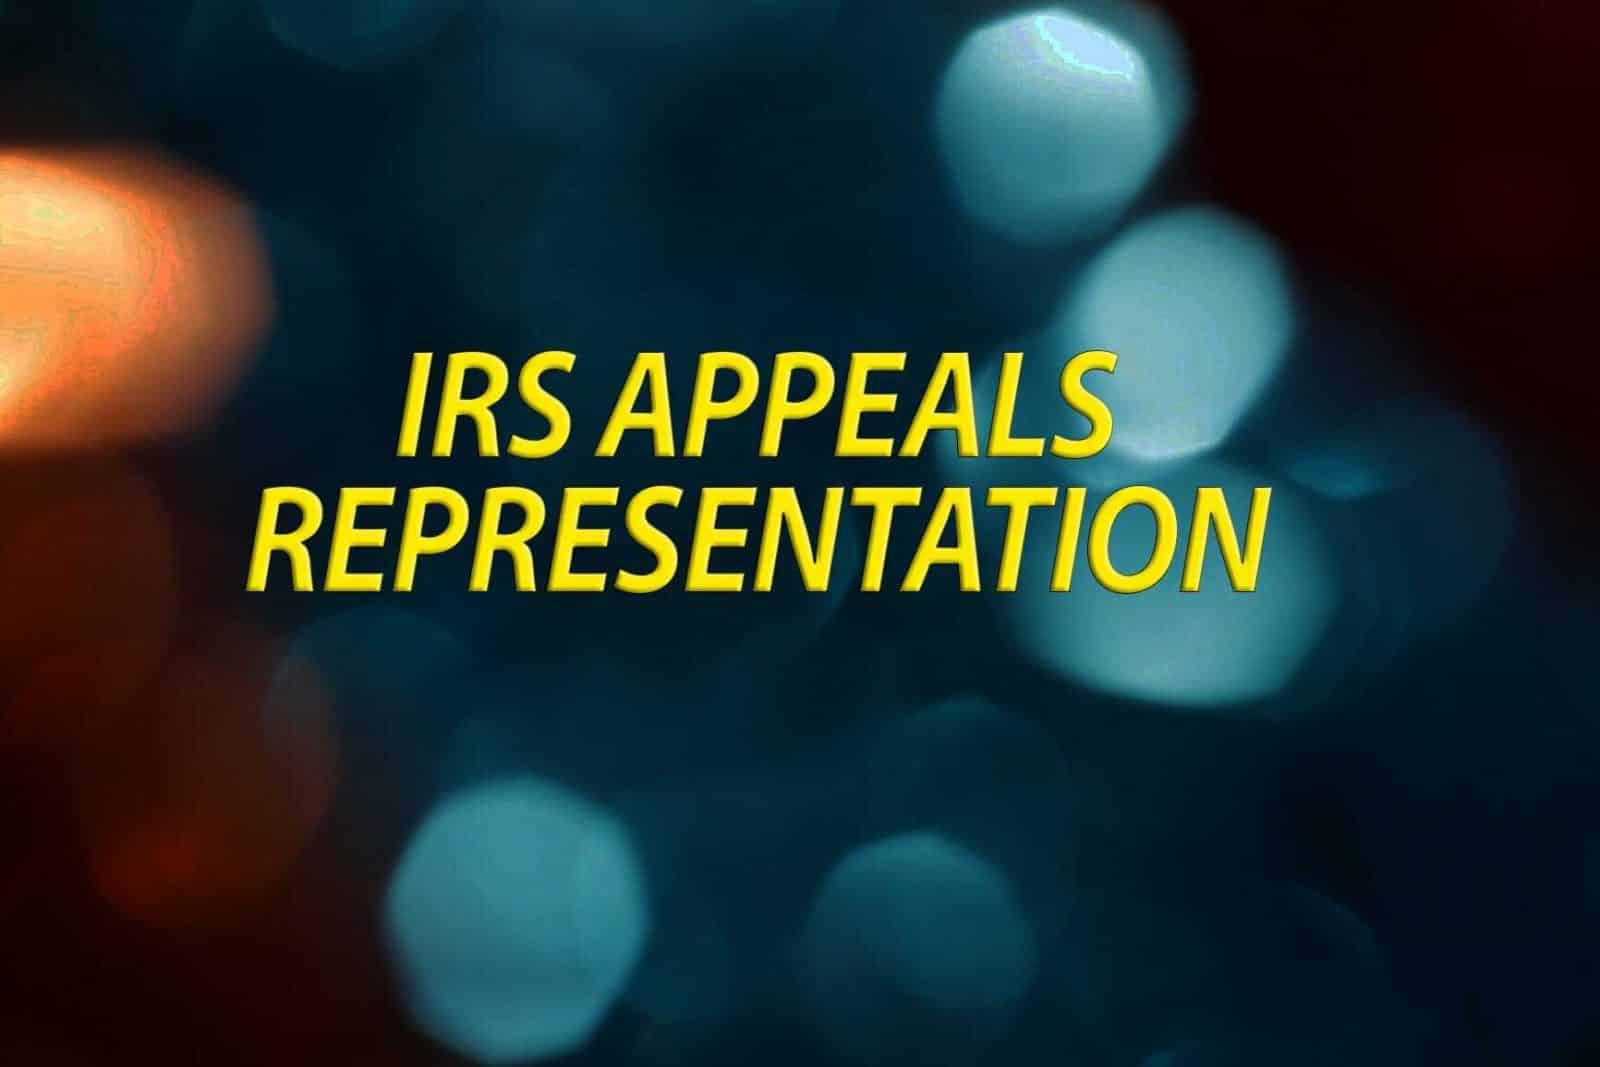 IRS Appeals Representation